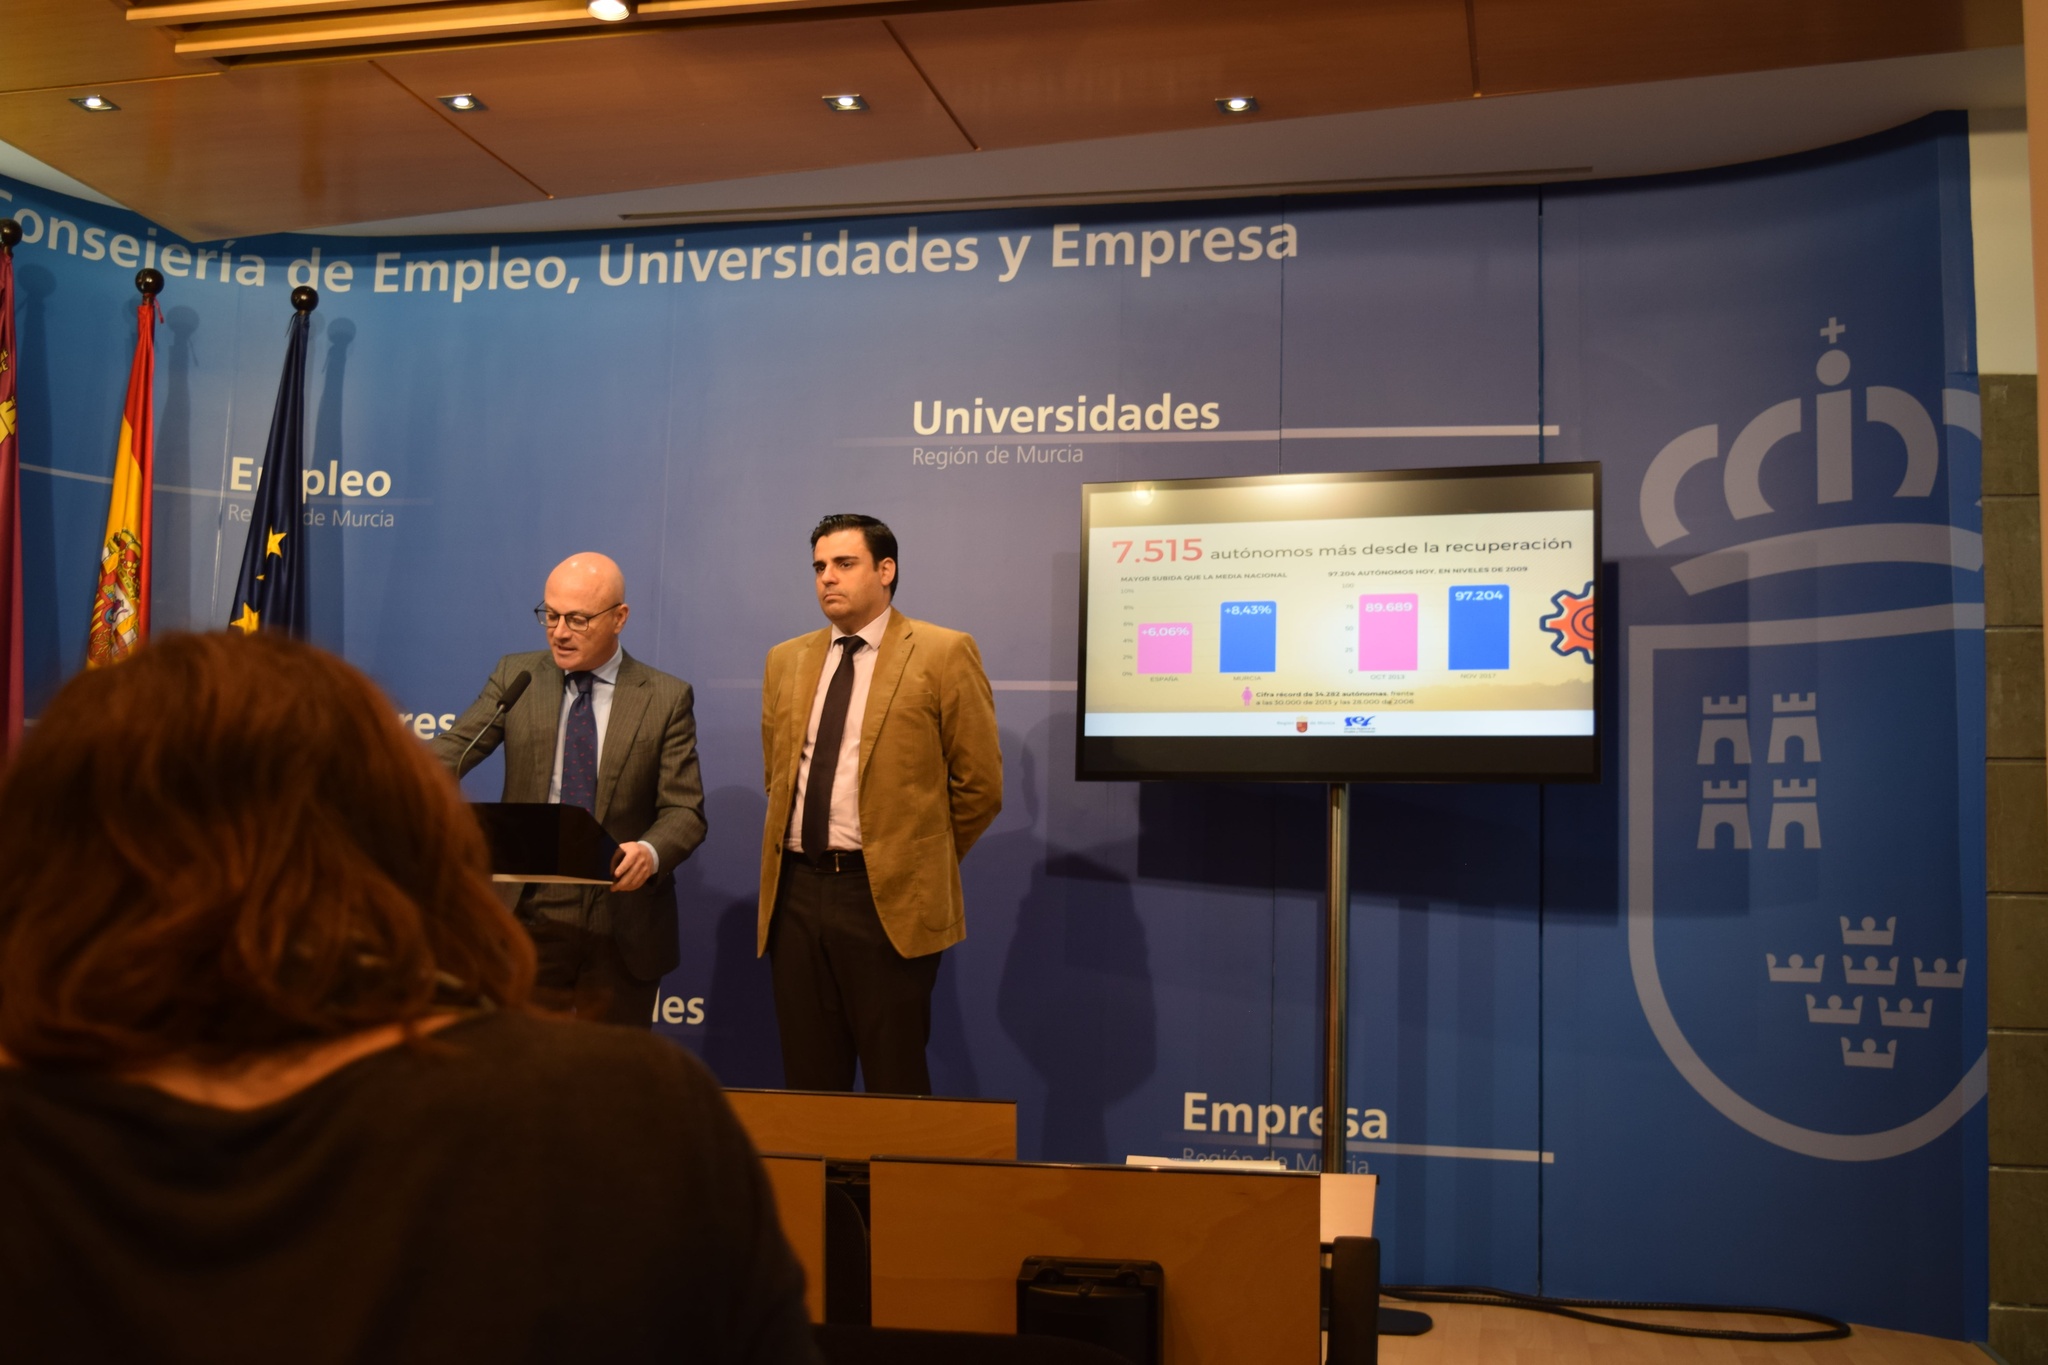 El consejero de Empleo, Universidades y Empresa, Juan Hernández, ofreció hoy un balance sobre las cifras de autónomos en la Región